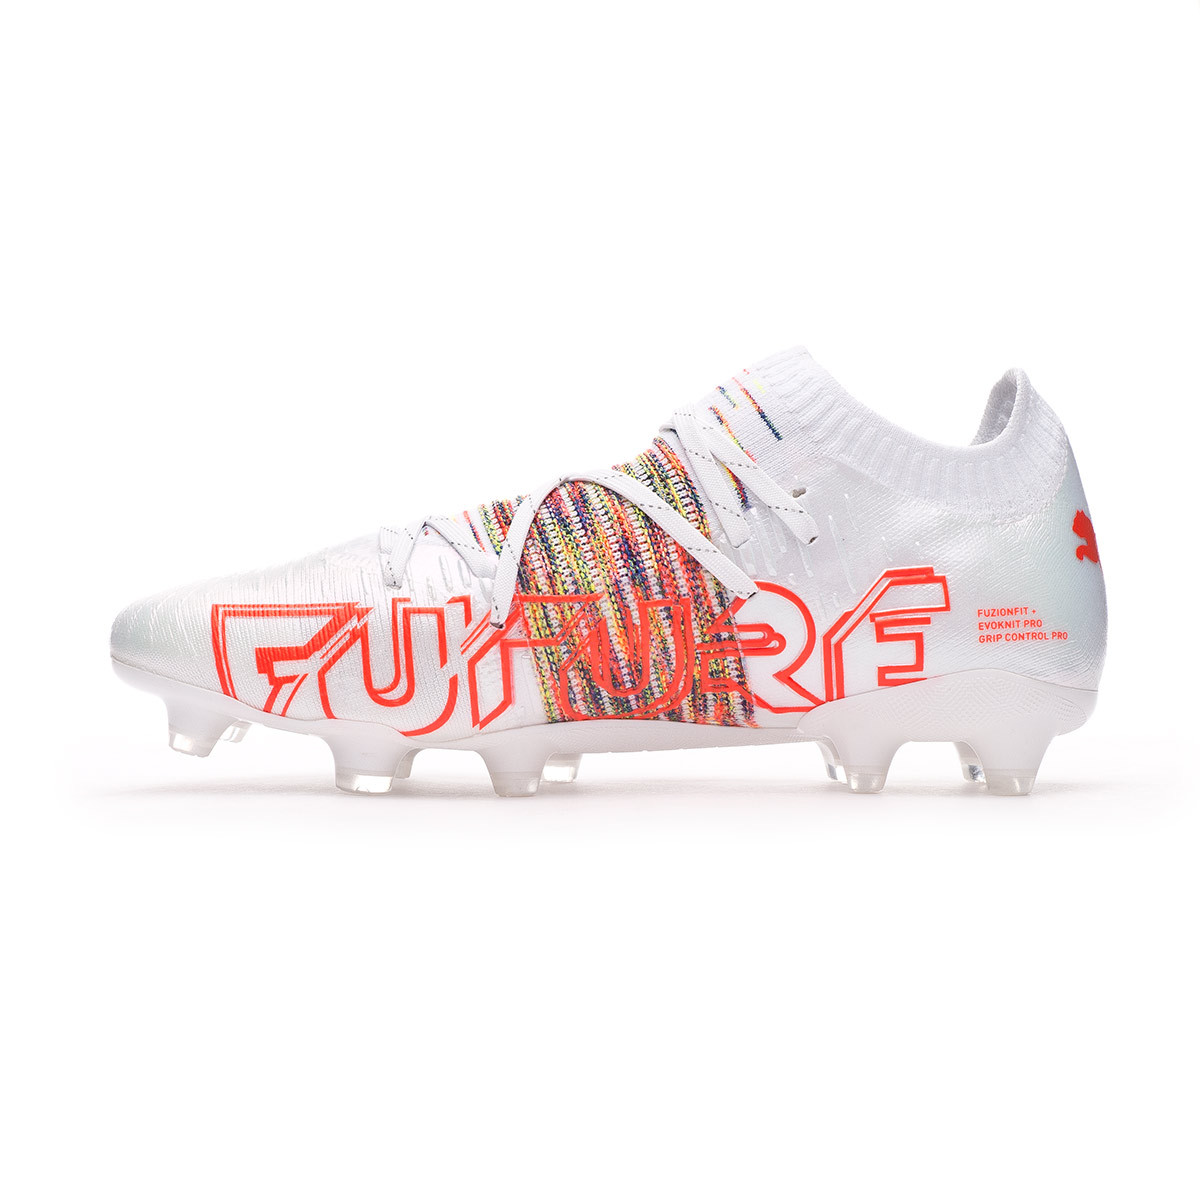 Football Boots Puma Future 1 1 Fg Ag Puma White Red Blast Futbol Emotion